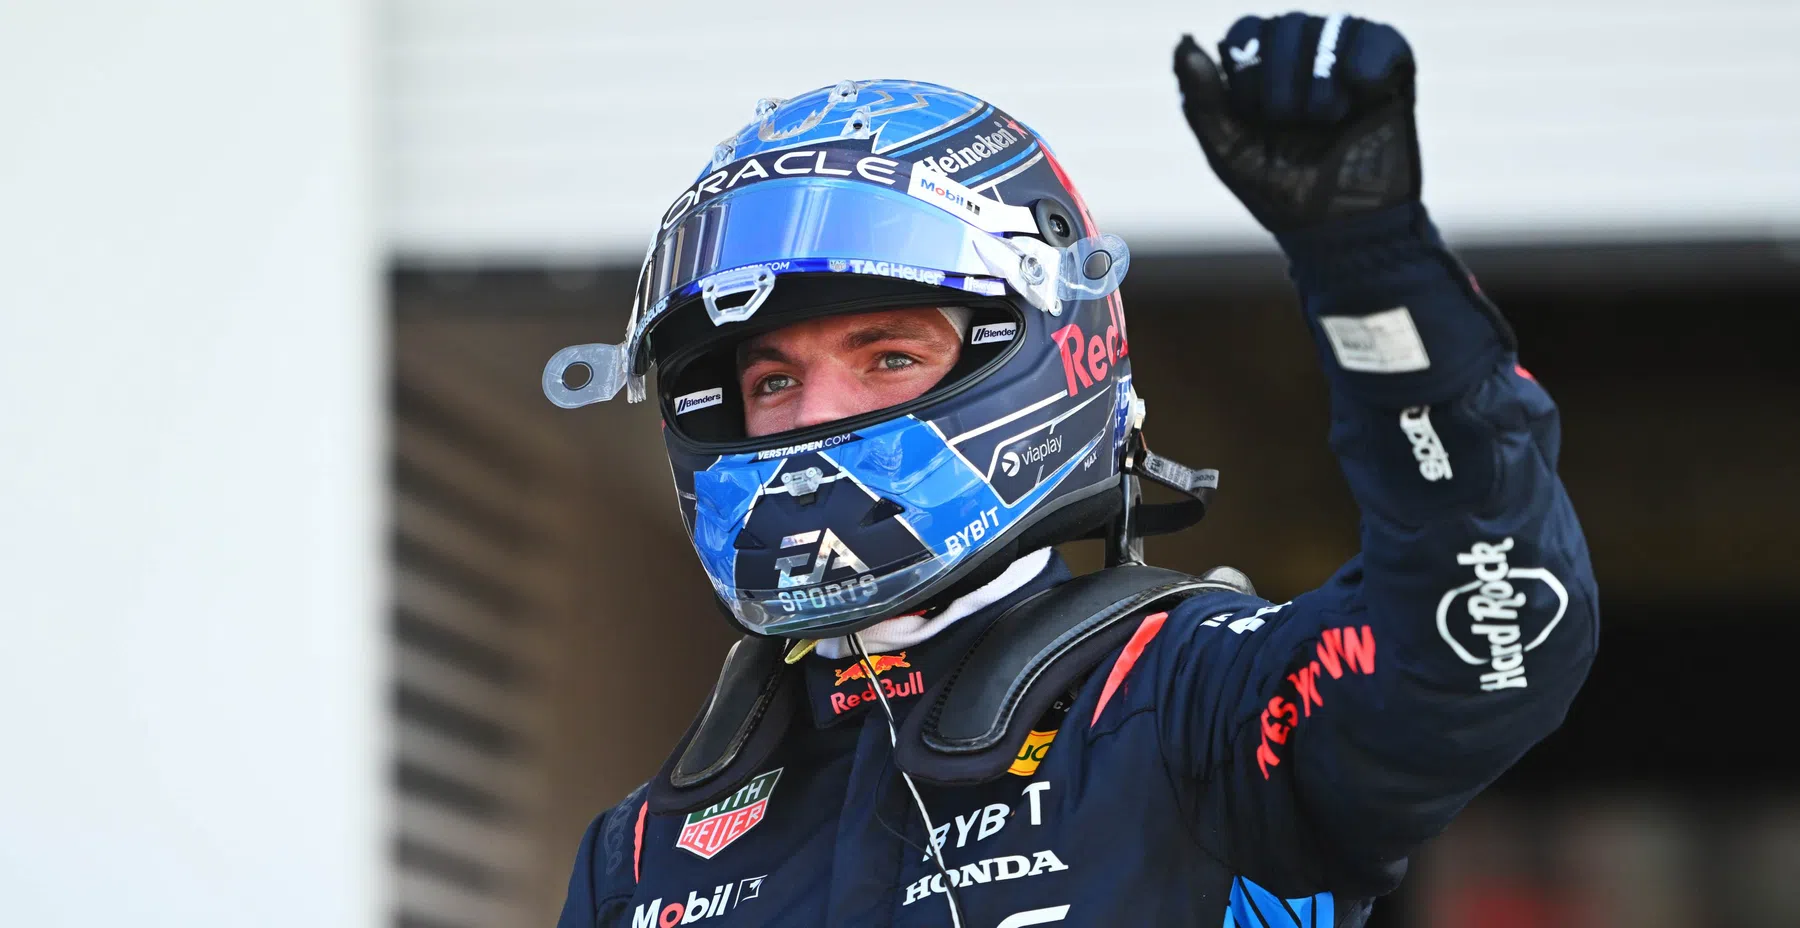 Verstappen remporte la course de simulation des 24 heures du Nurburgring avec l'équipe Redline.